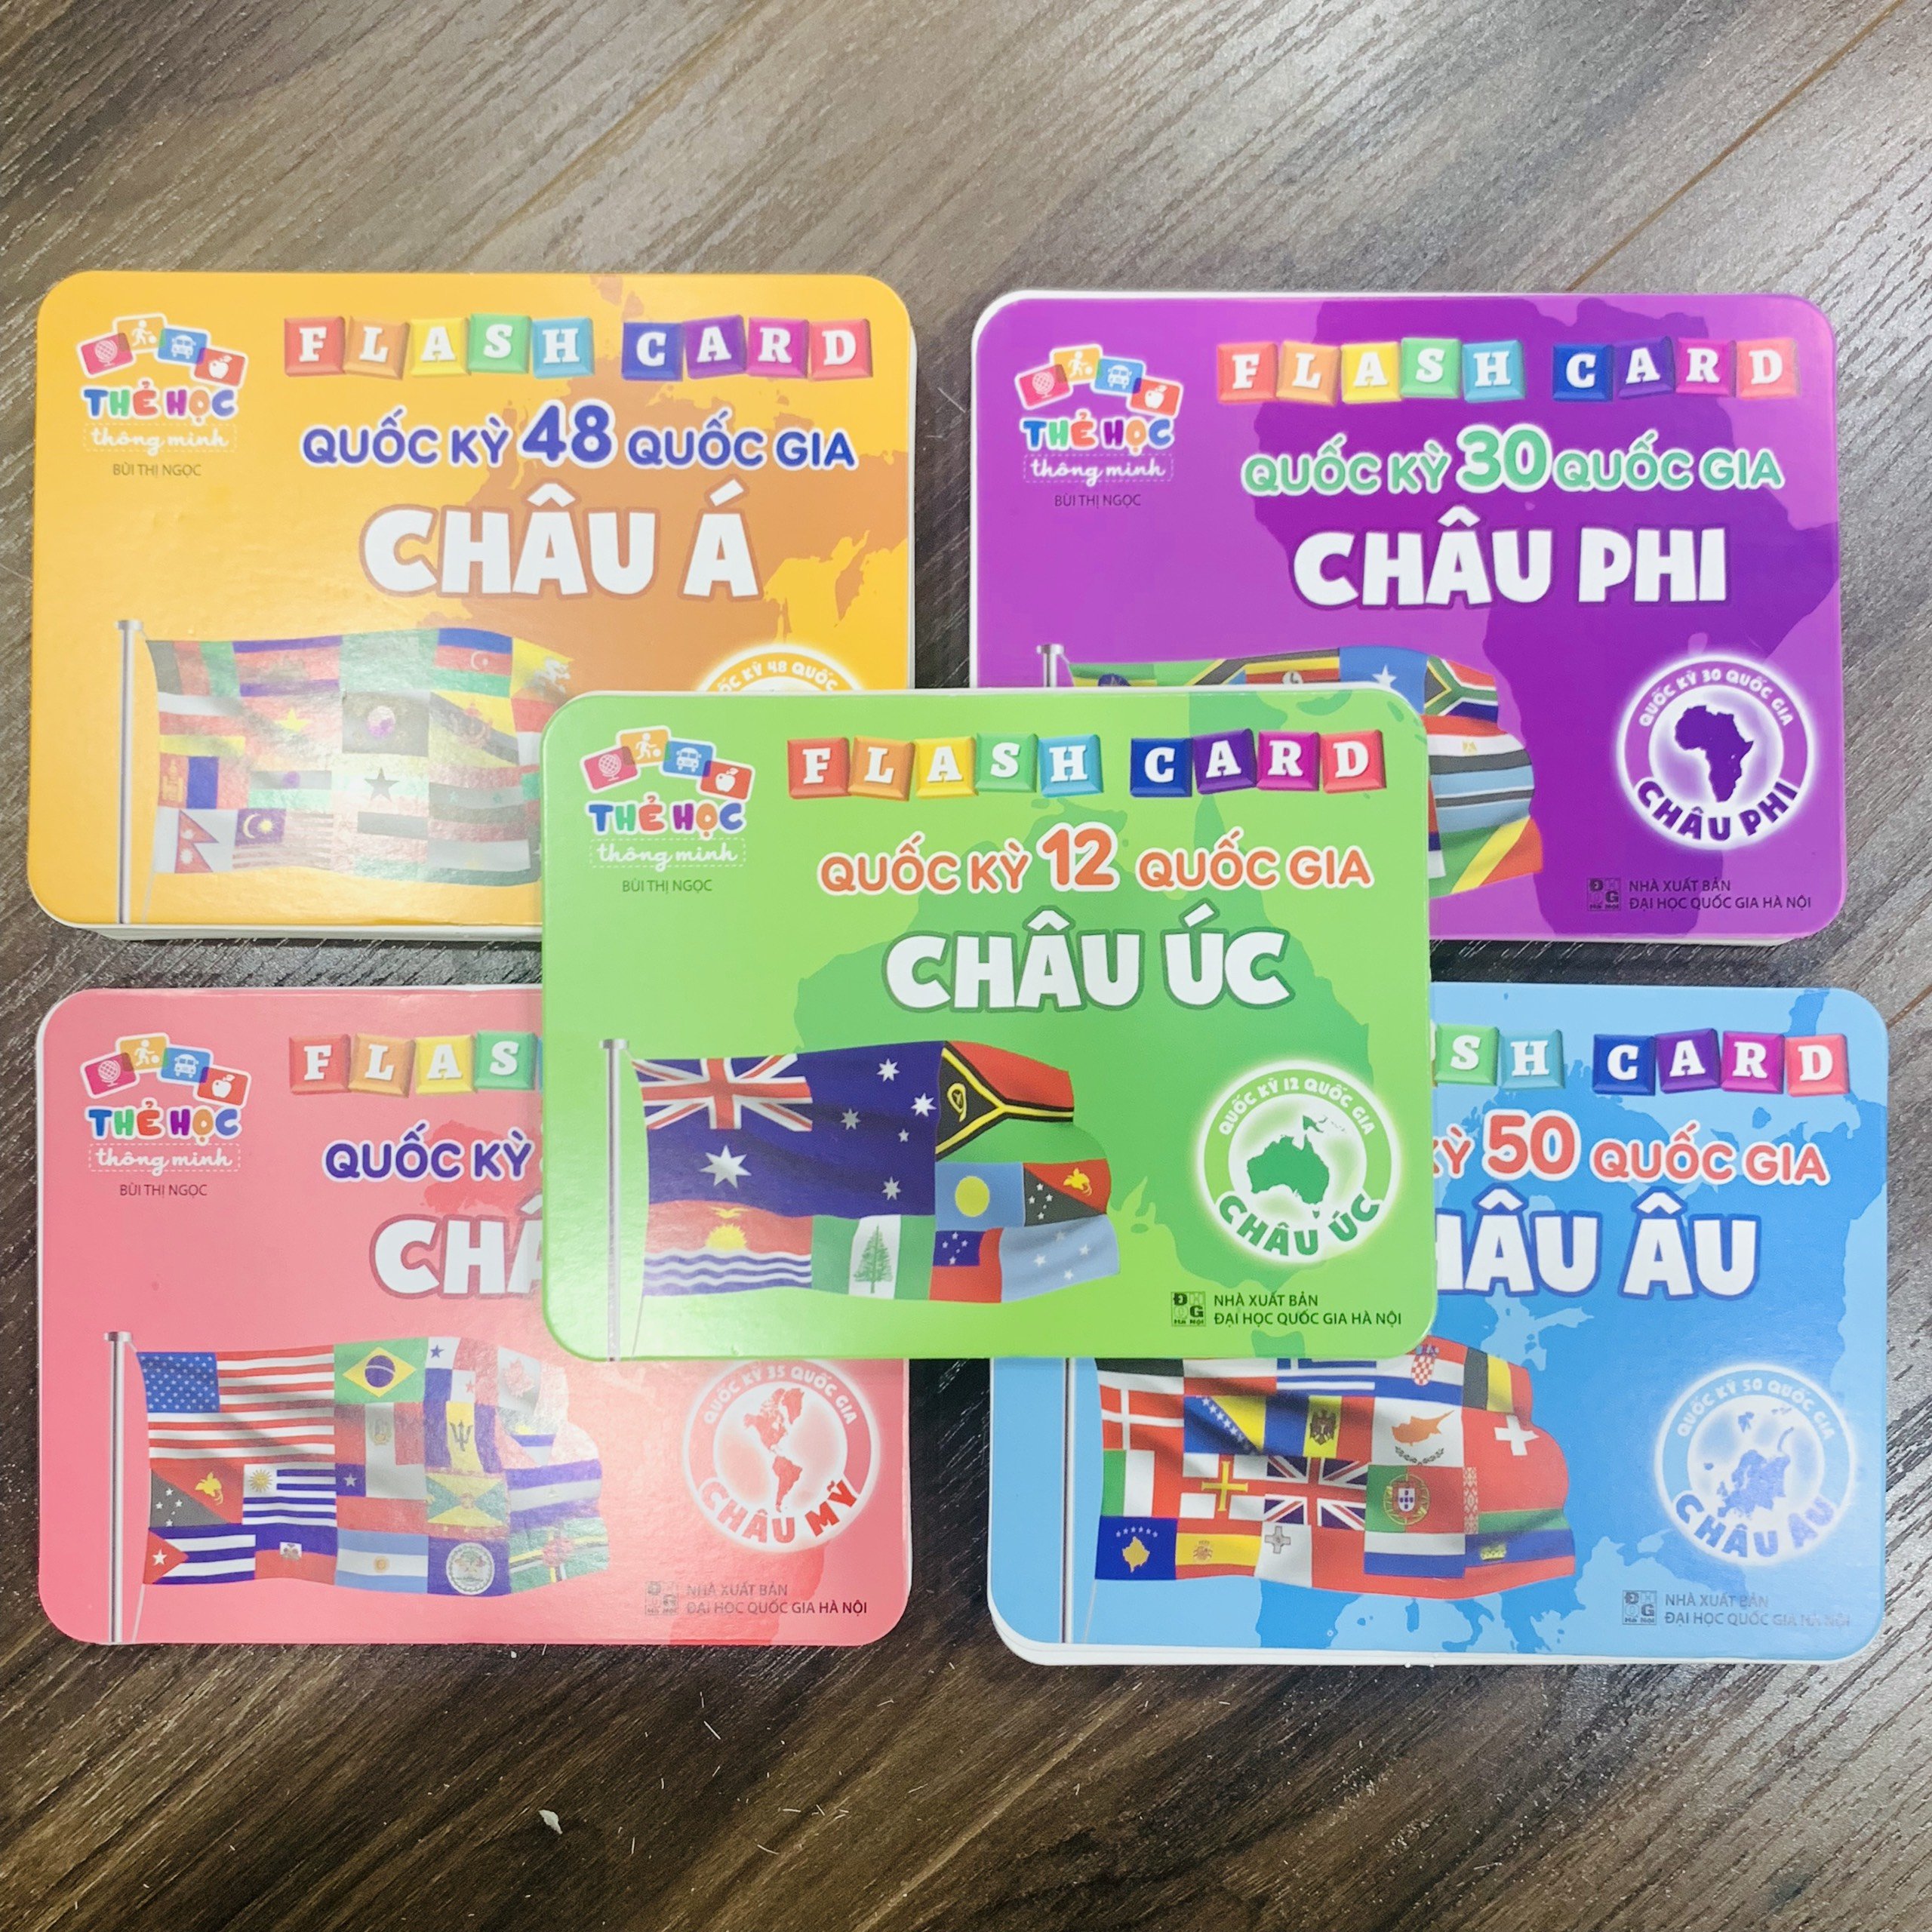 Bộ Thẻ Học Flash Card Thông Minh Cho Trẻ Phân Biệt Quốc Kỳ Của Các Quốc Gia Châu Úc